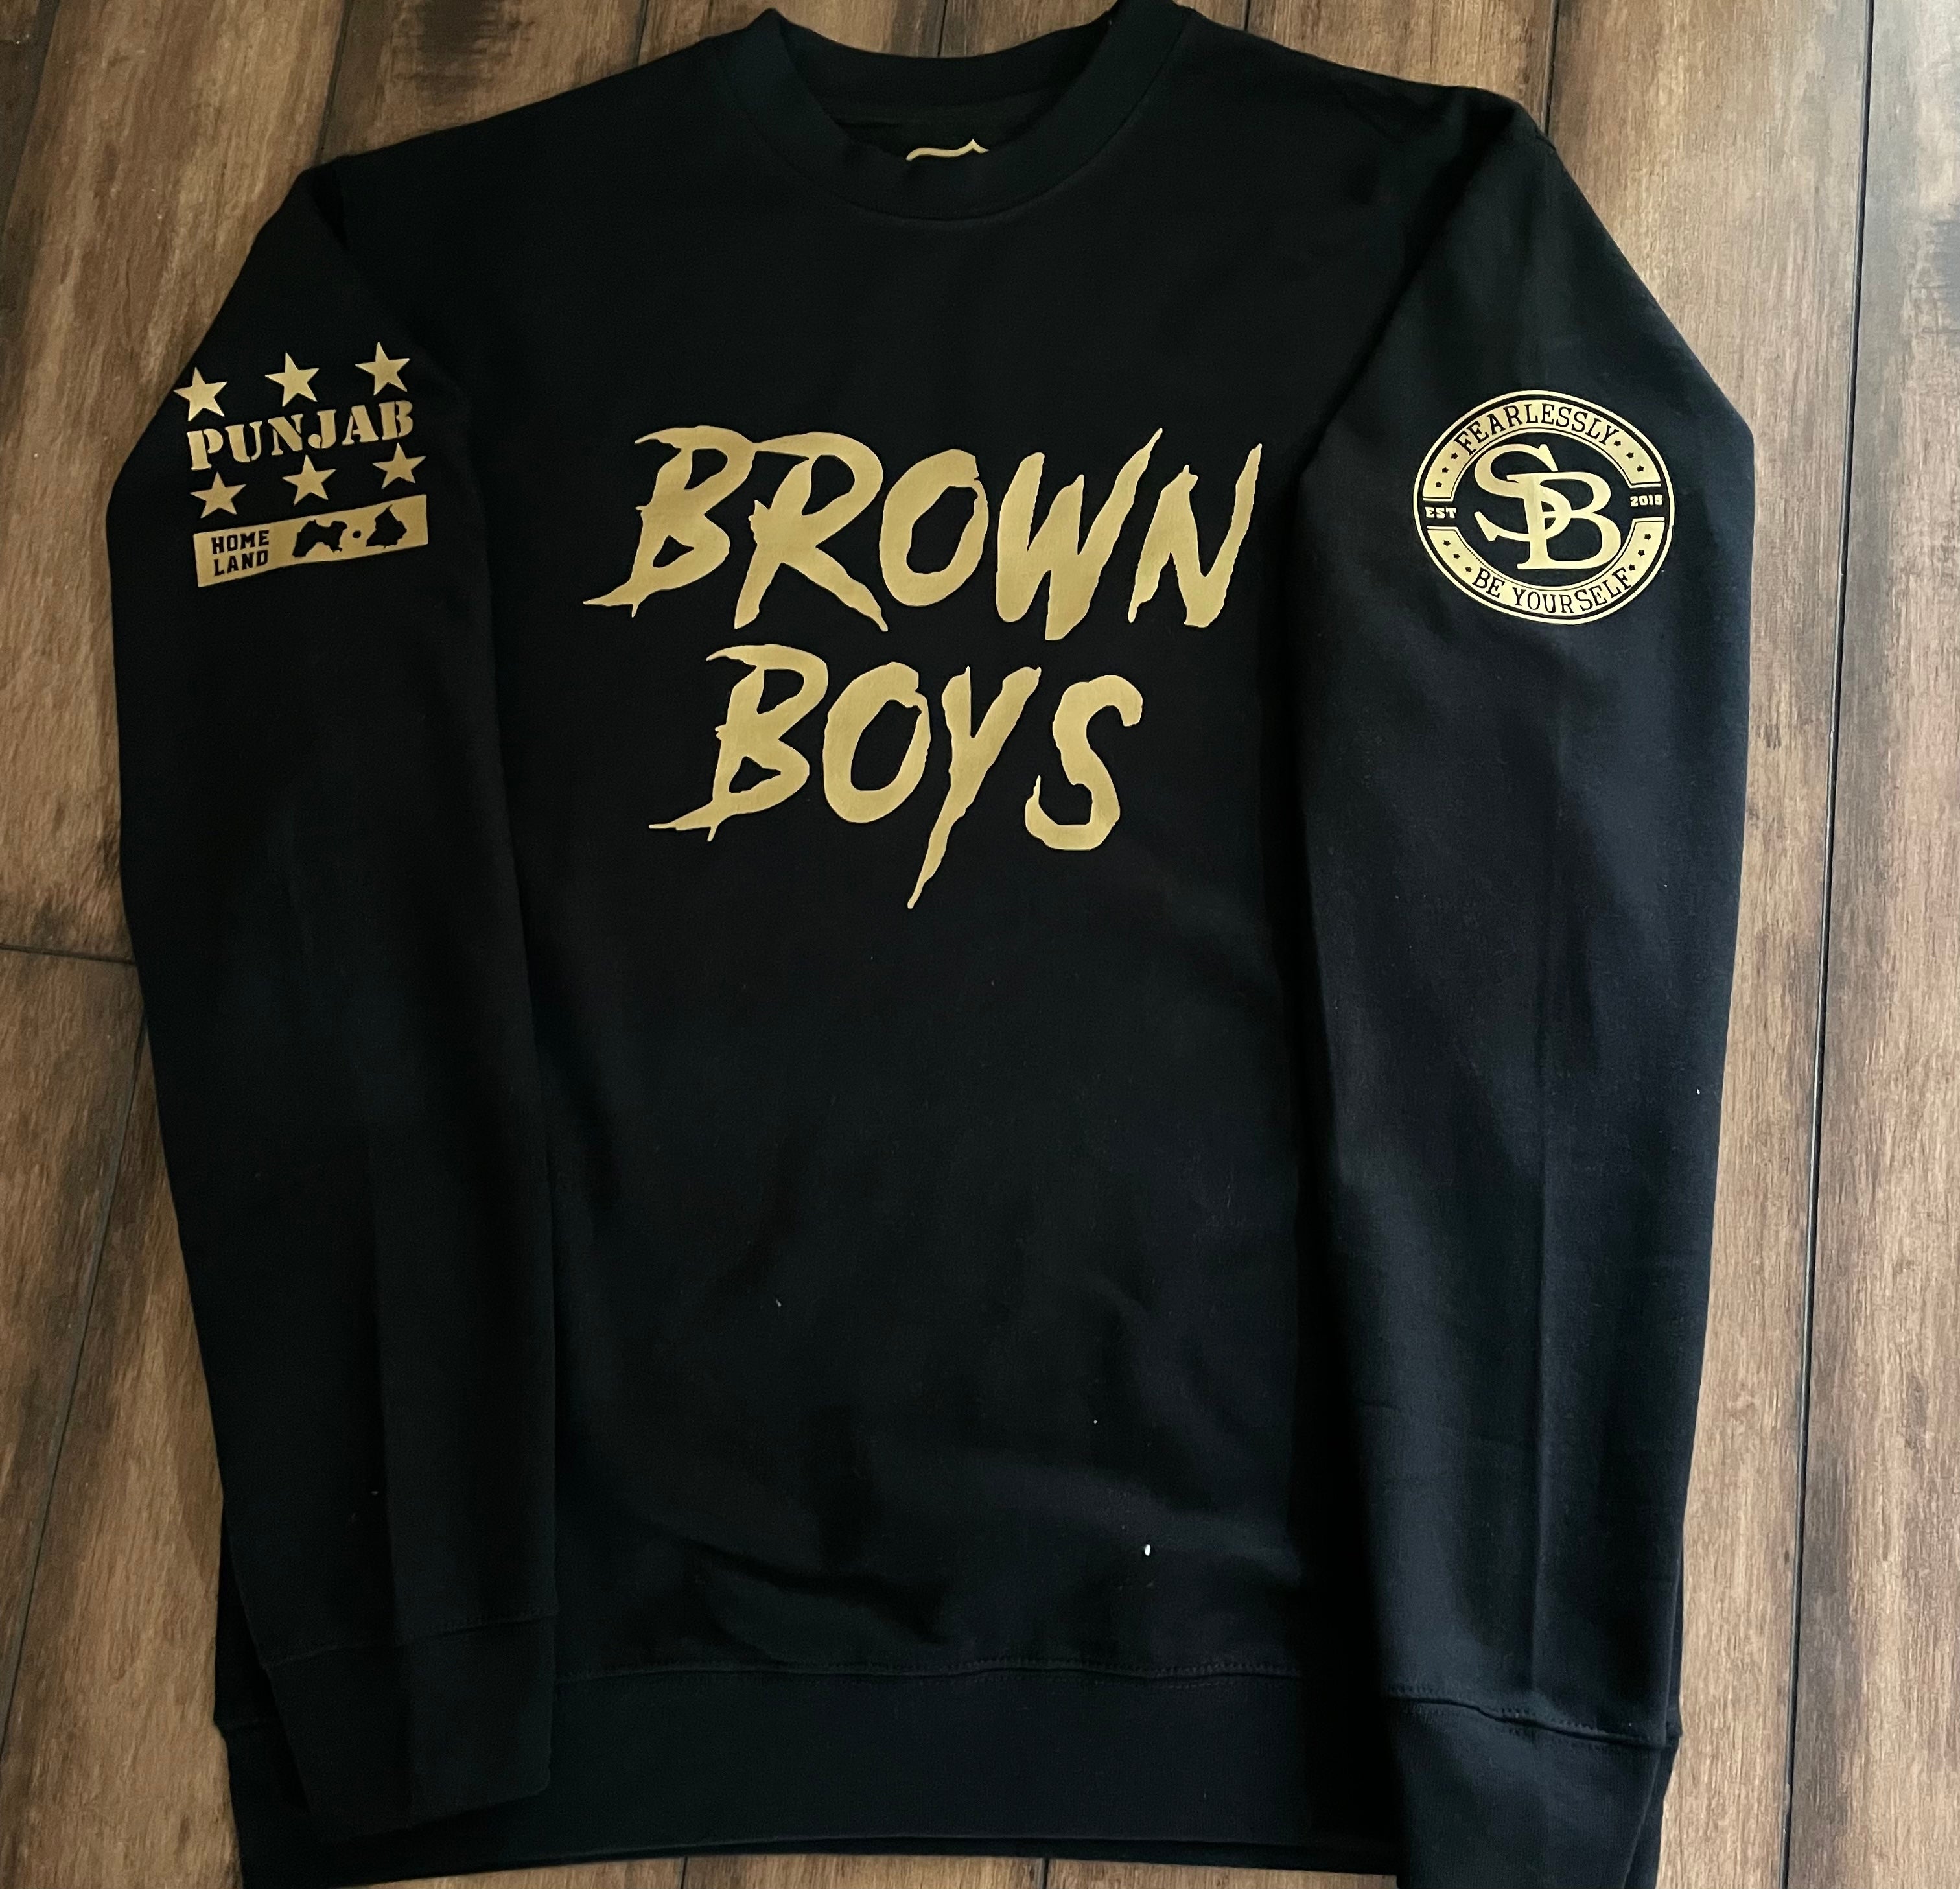 Brown Boys Hoodie/ Sweatshirt